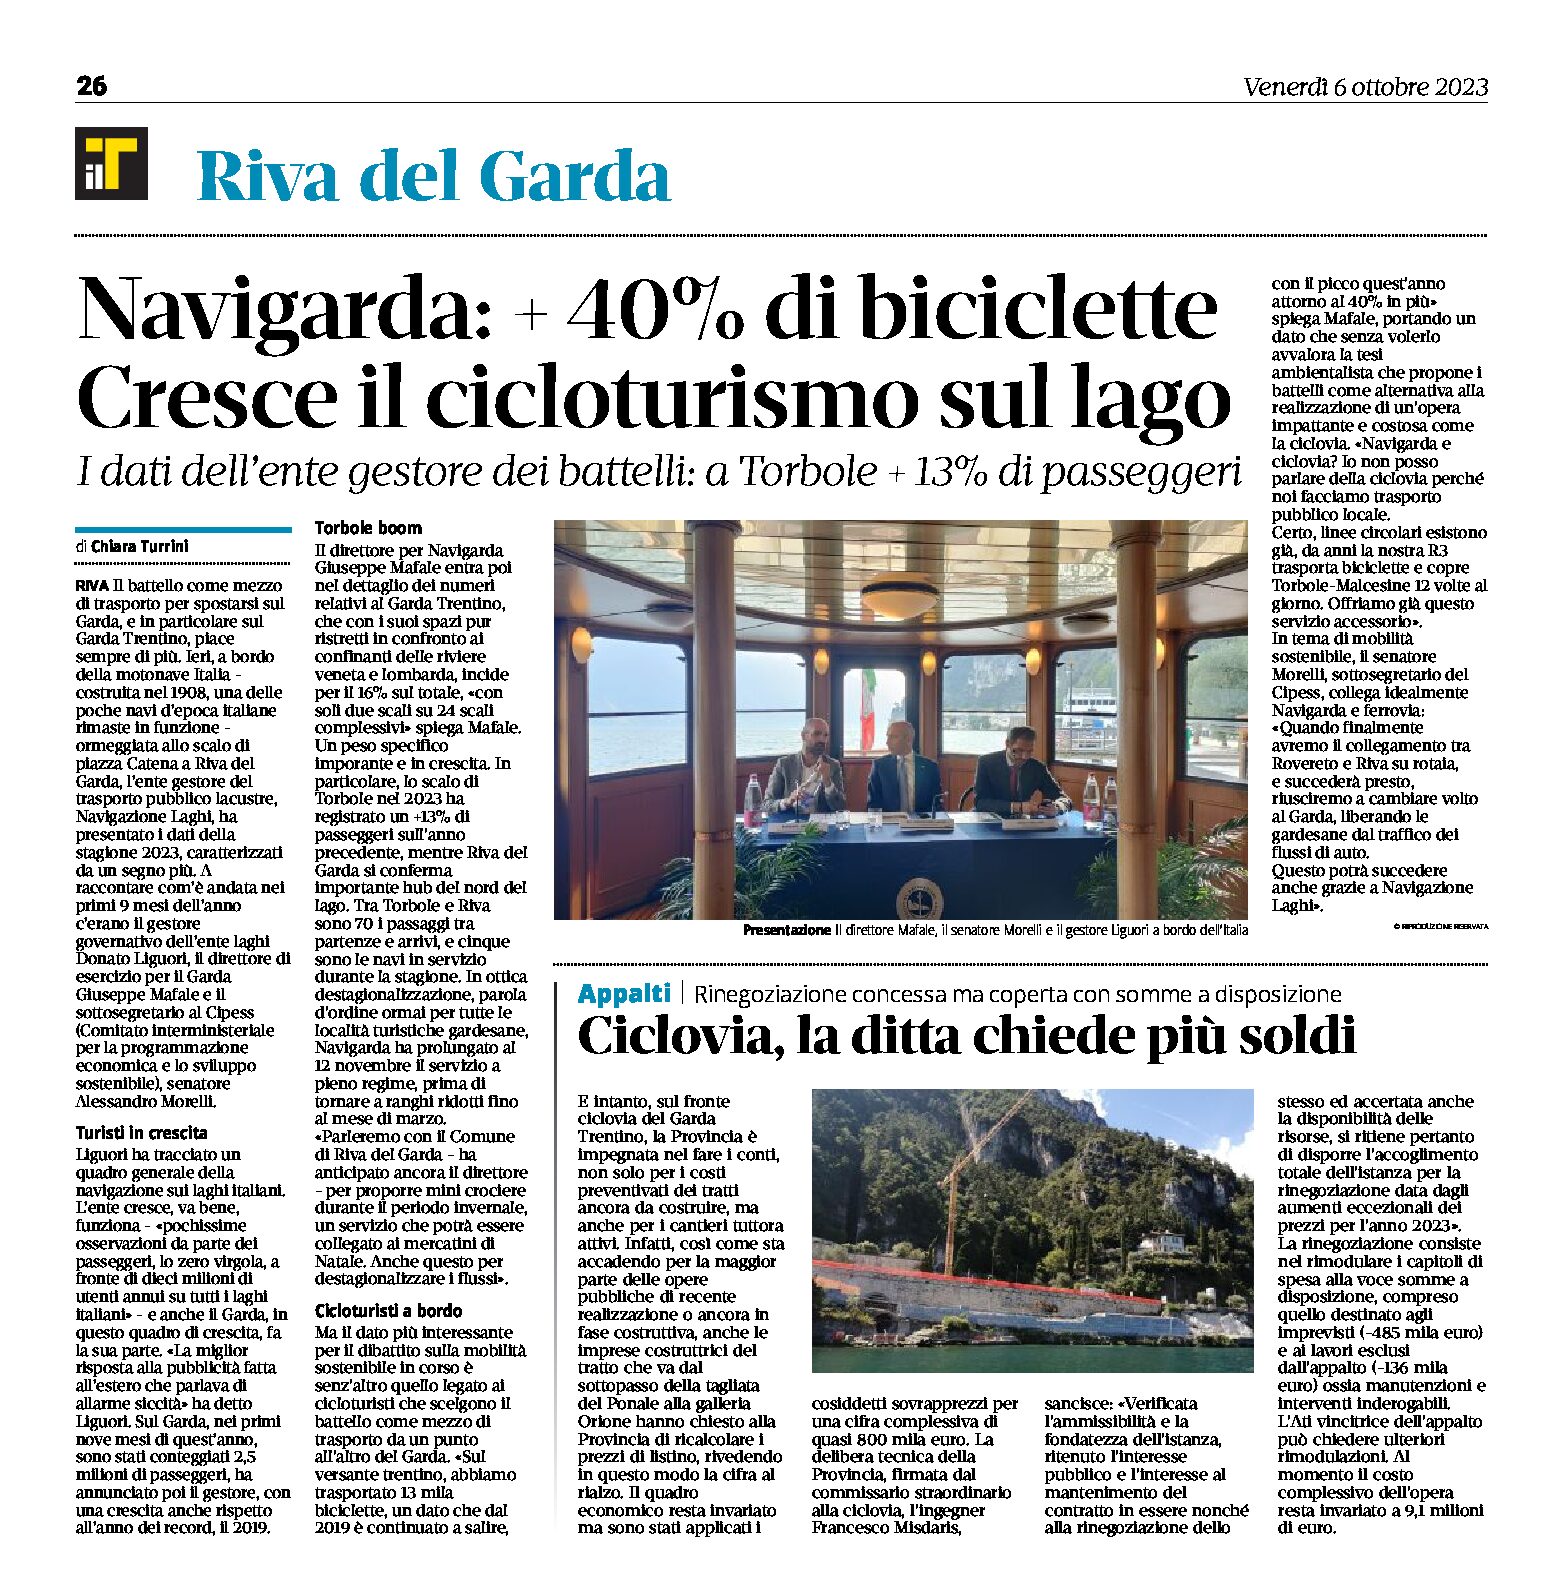 Riva, Navigarda: + 40% di biciclette. Cresce il cicloturismo sul lago